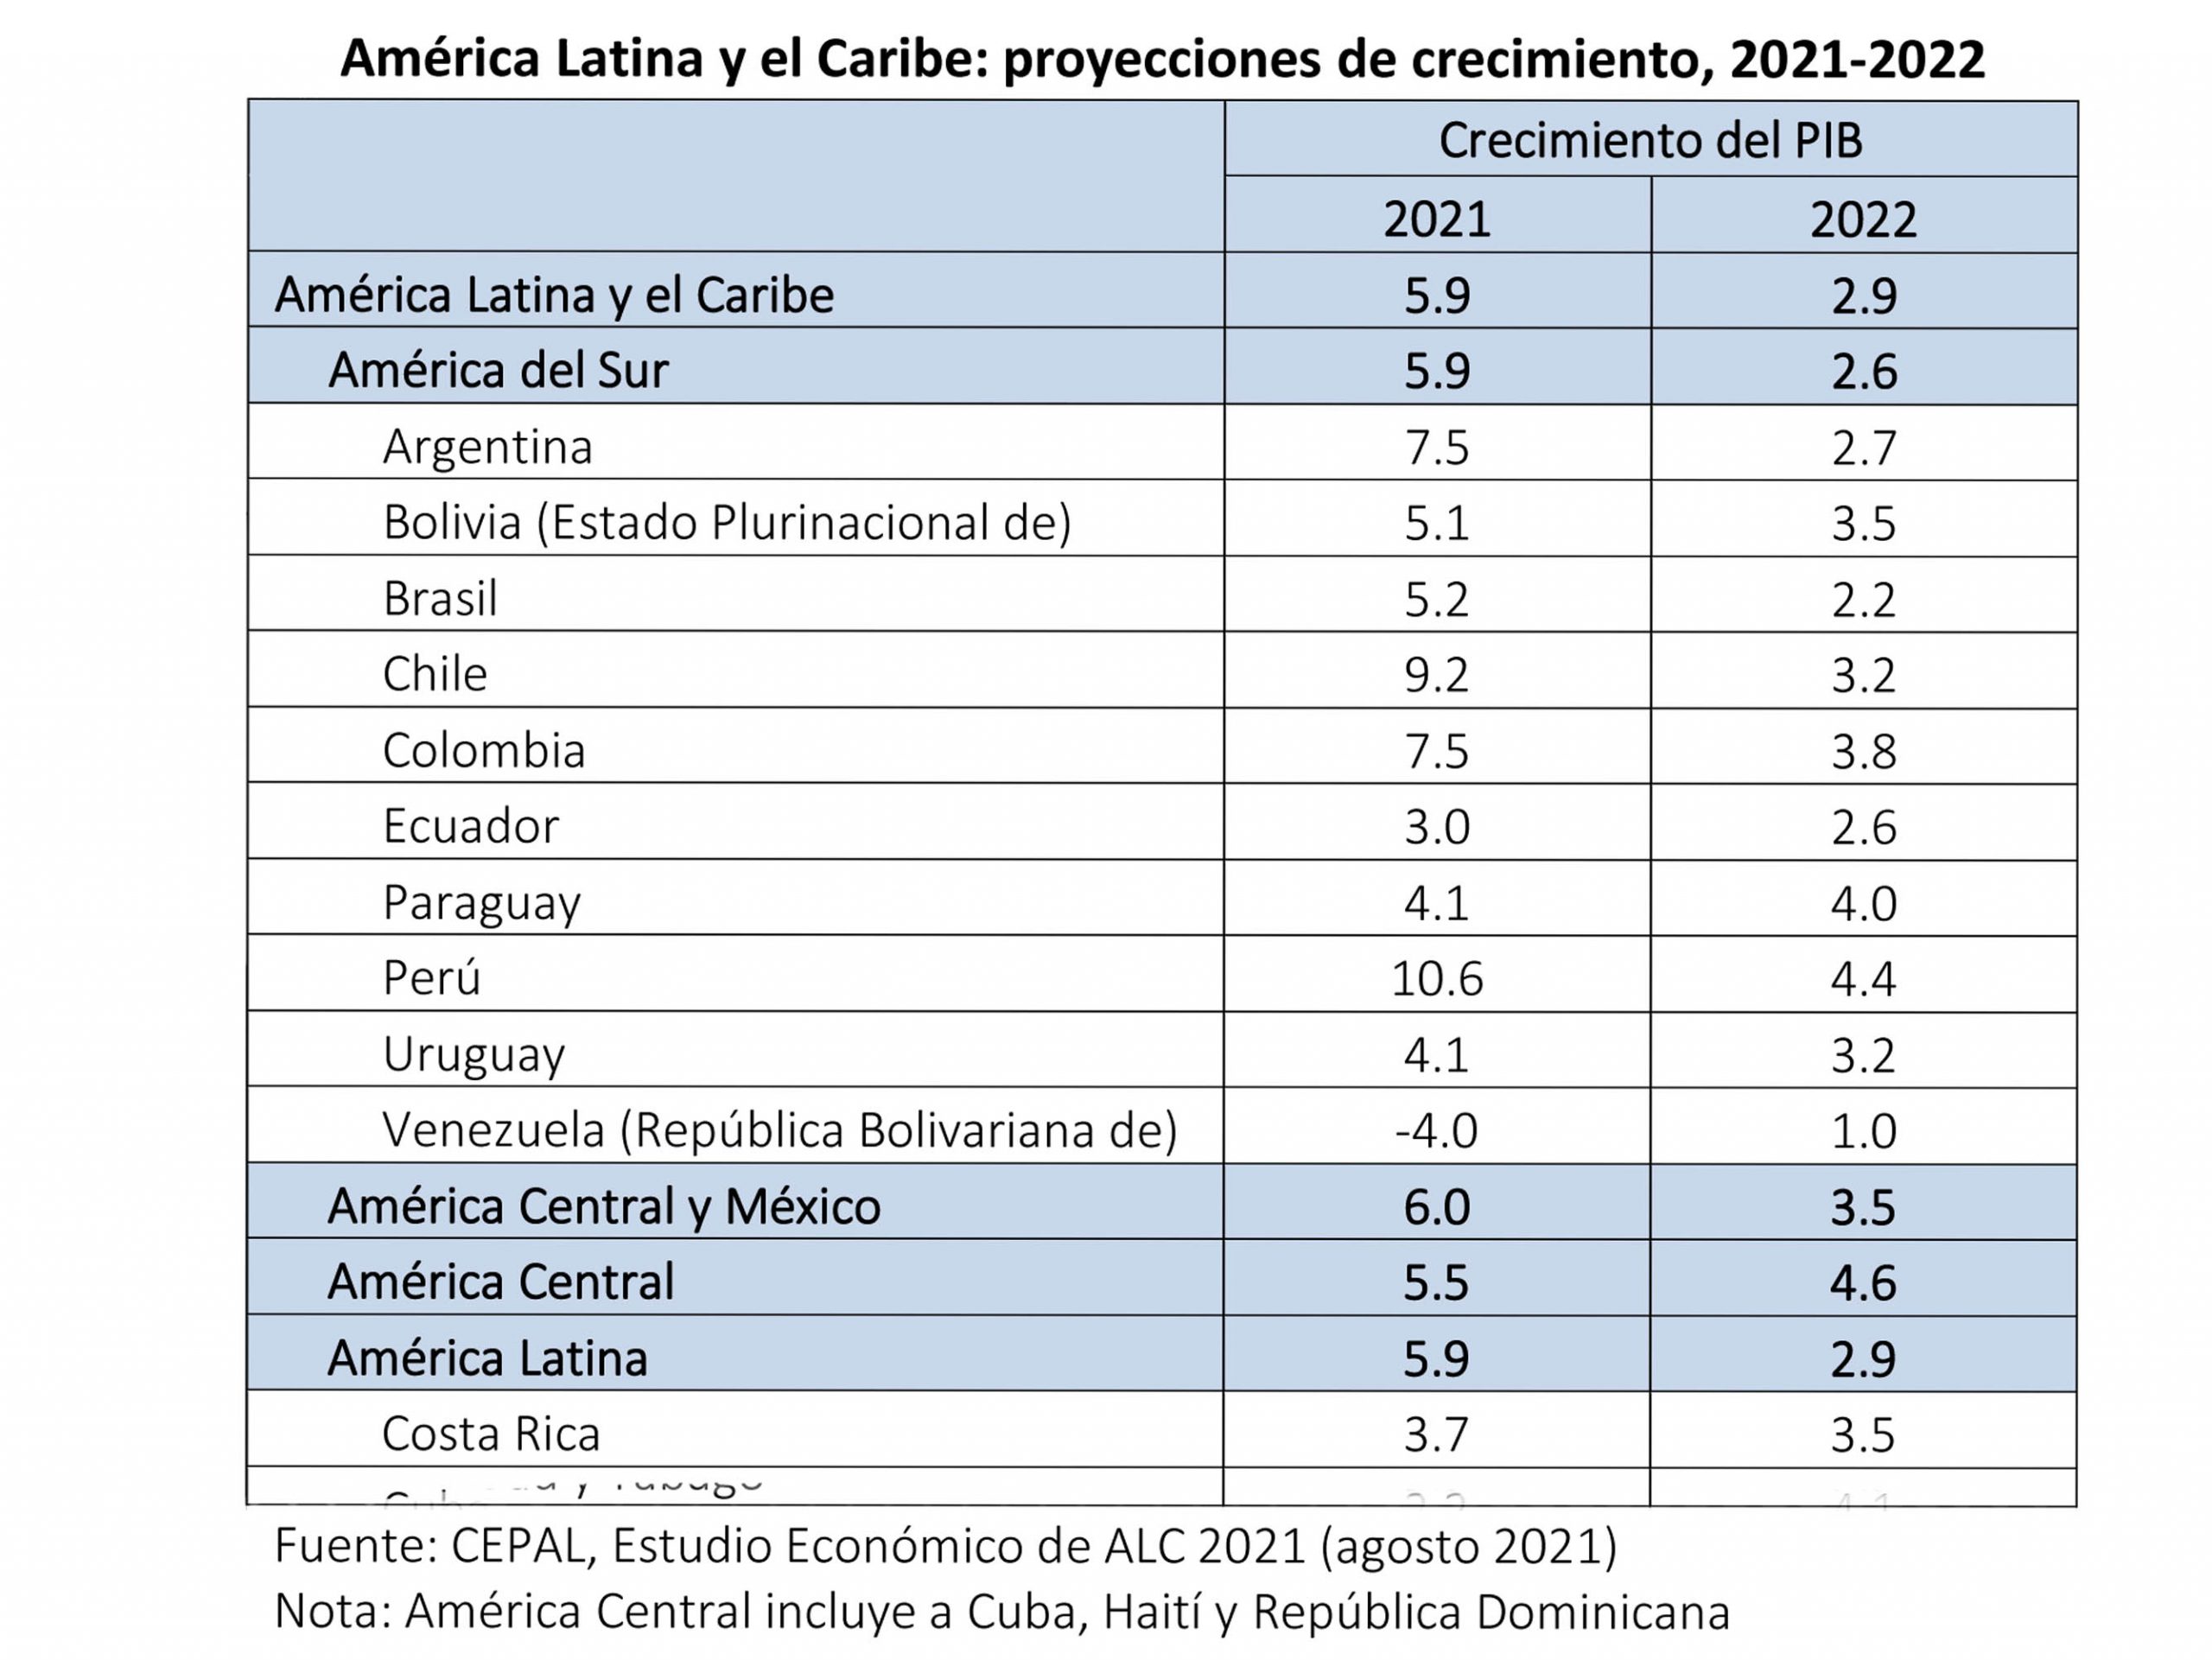 Cepal reitera crecimiento de  5,1 % para Bolivia este 2021